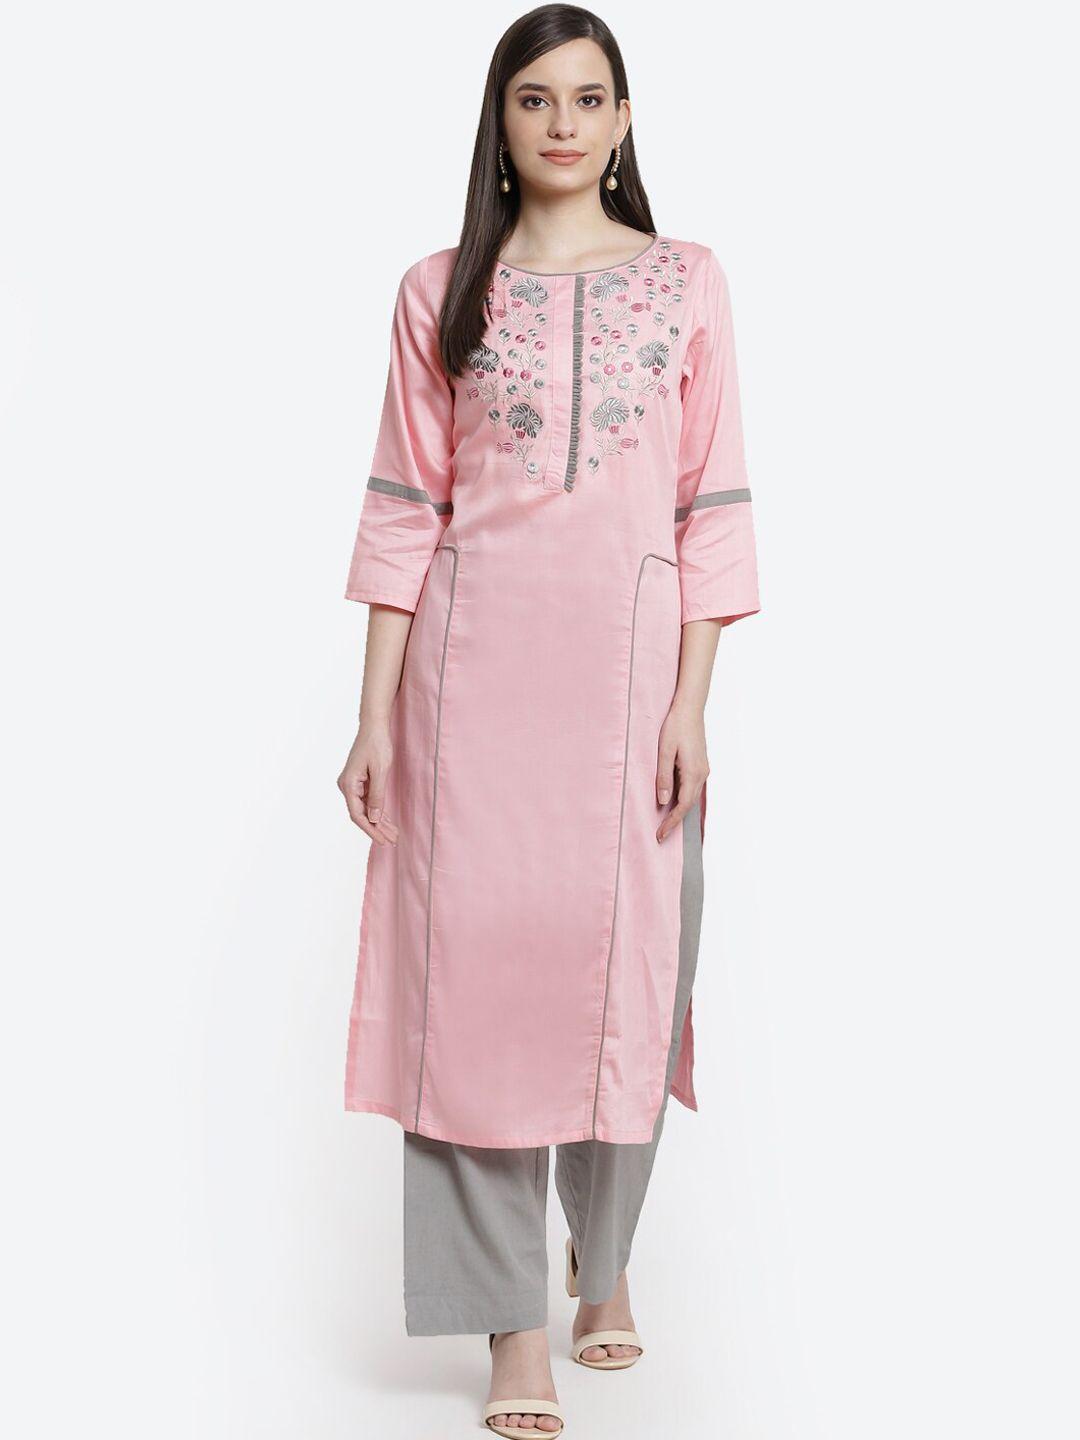 kurti's by menka women pink and grey embroidered yoke design rayon straight kurta